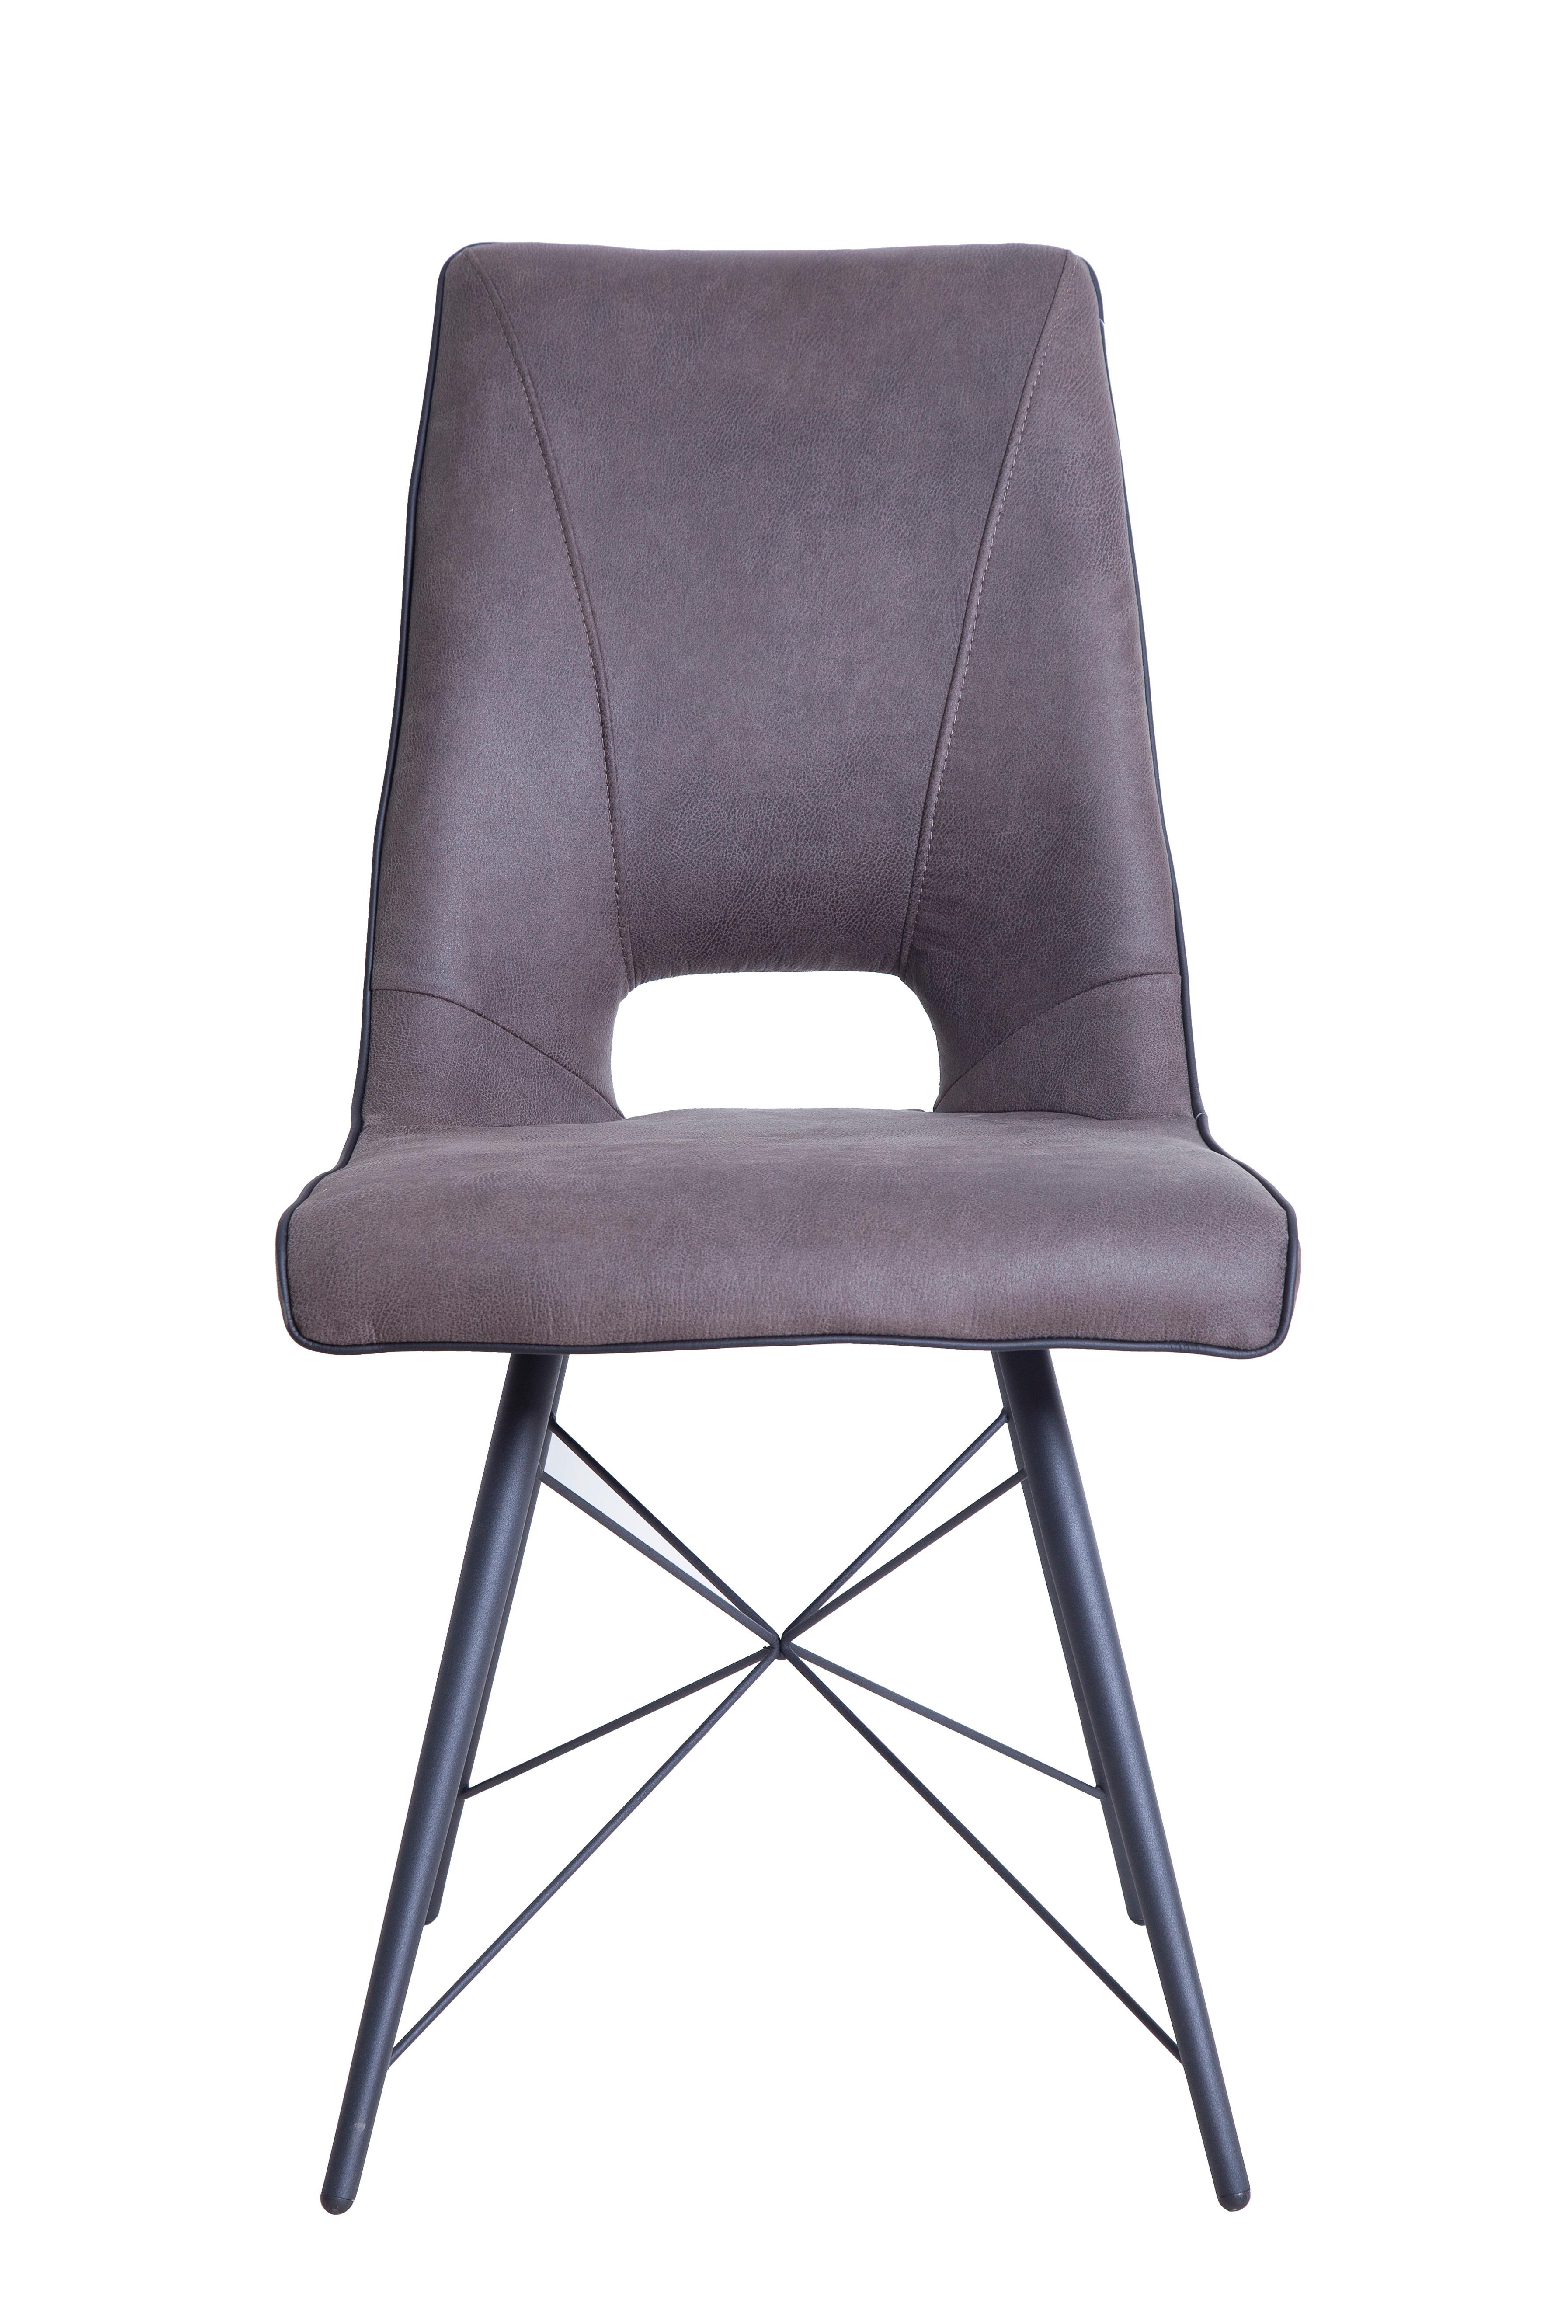 Stuhl in Grau - Schwarz/Grau, MODERN, Holz/Textil (47/91.5cm) - Modern Living